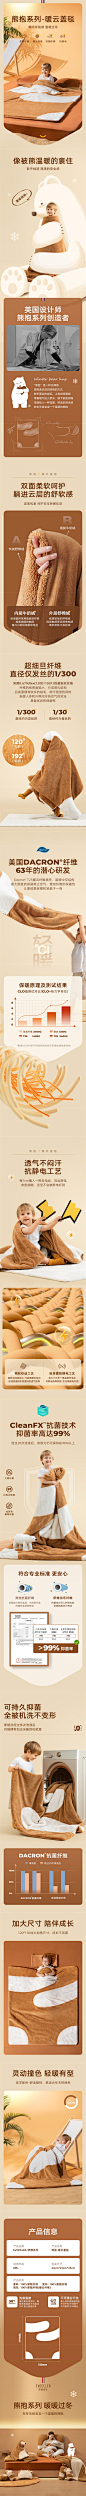 英国evoceler婴儿盖毯宝宝秋冬毯子午睡觉安抚小被子儿童加厚毛毯 详情页